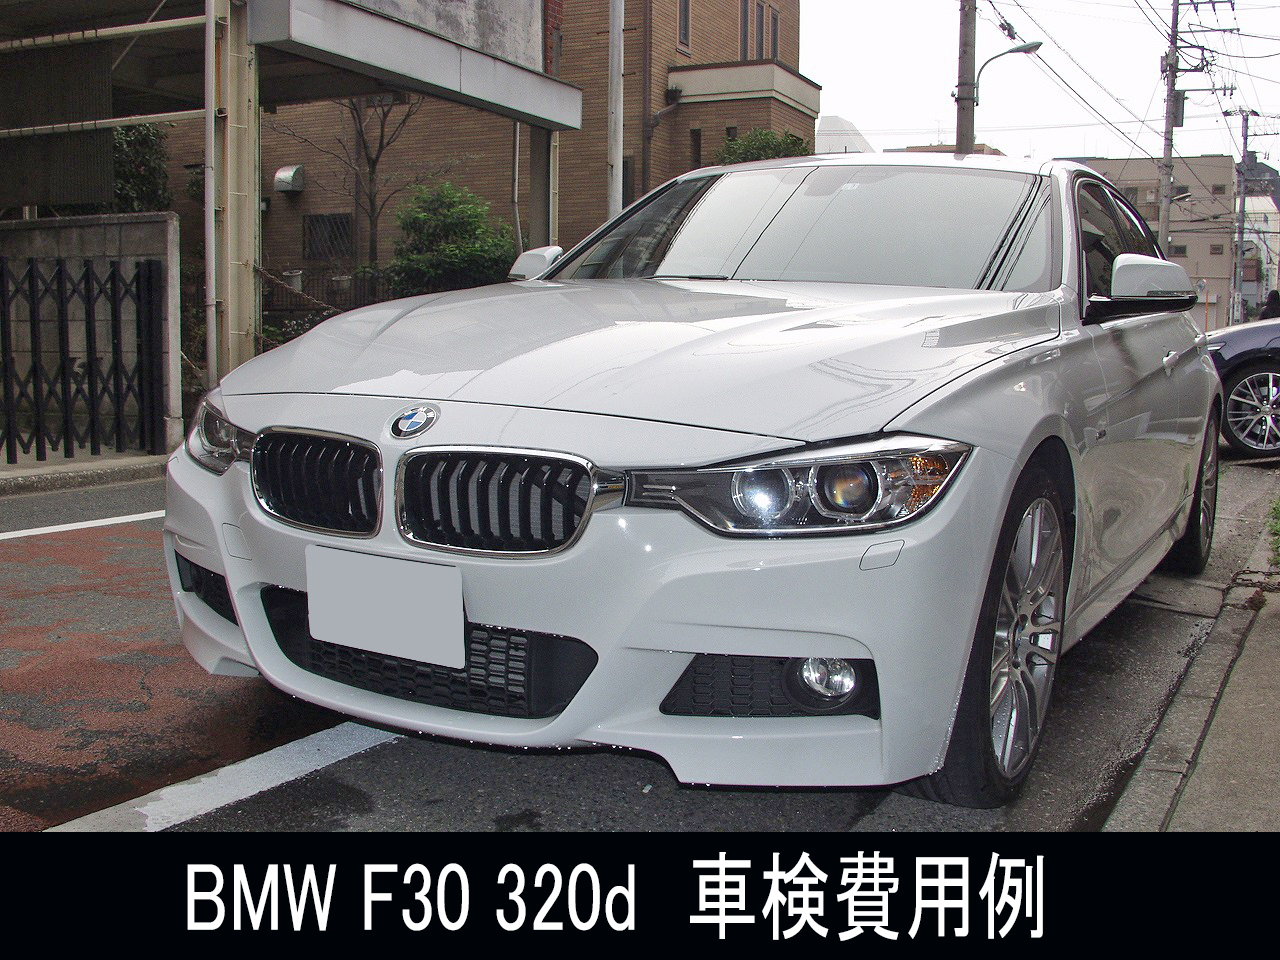 BMWの車検 F30 320d 格安車検事例 | 車検・板金塗装・修理・中古車の 